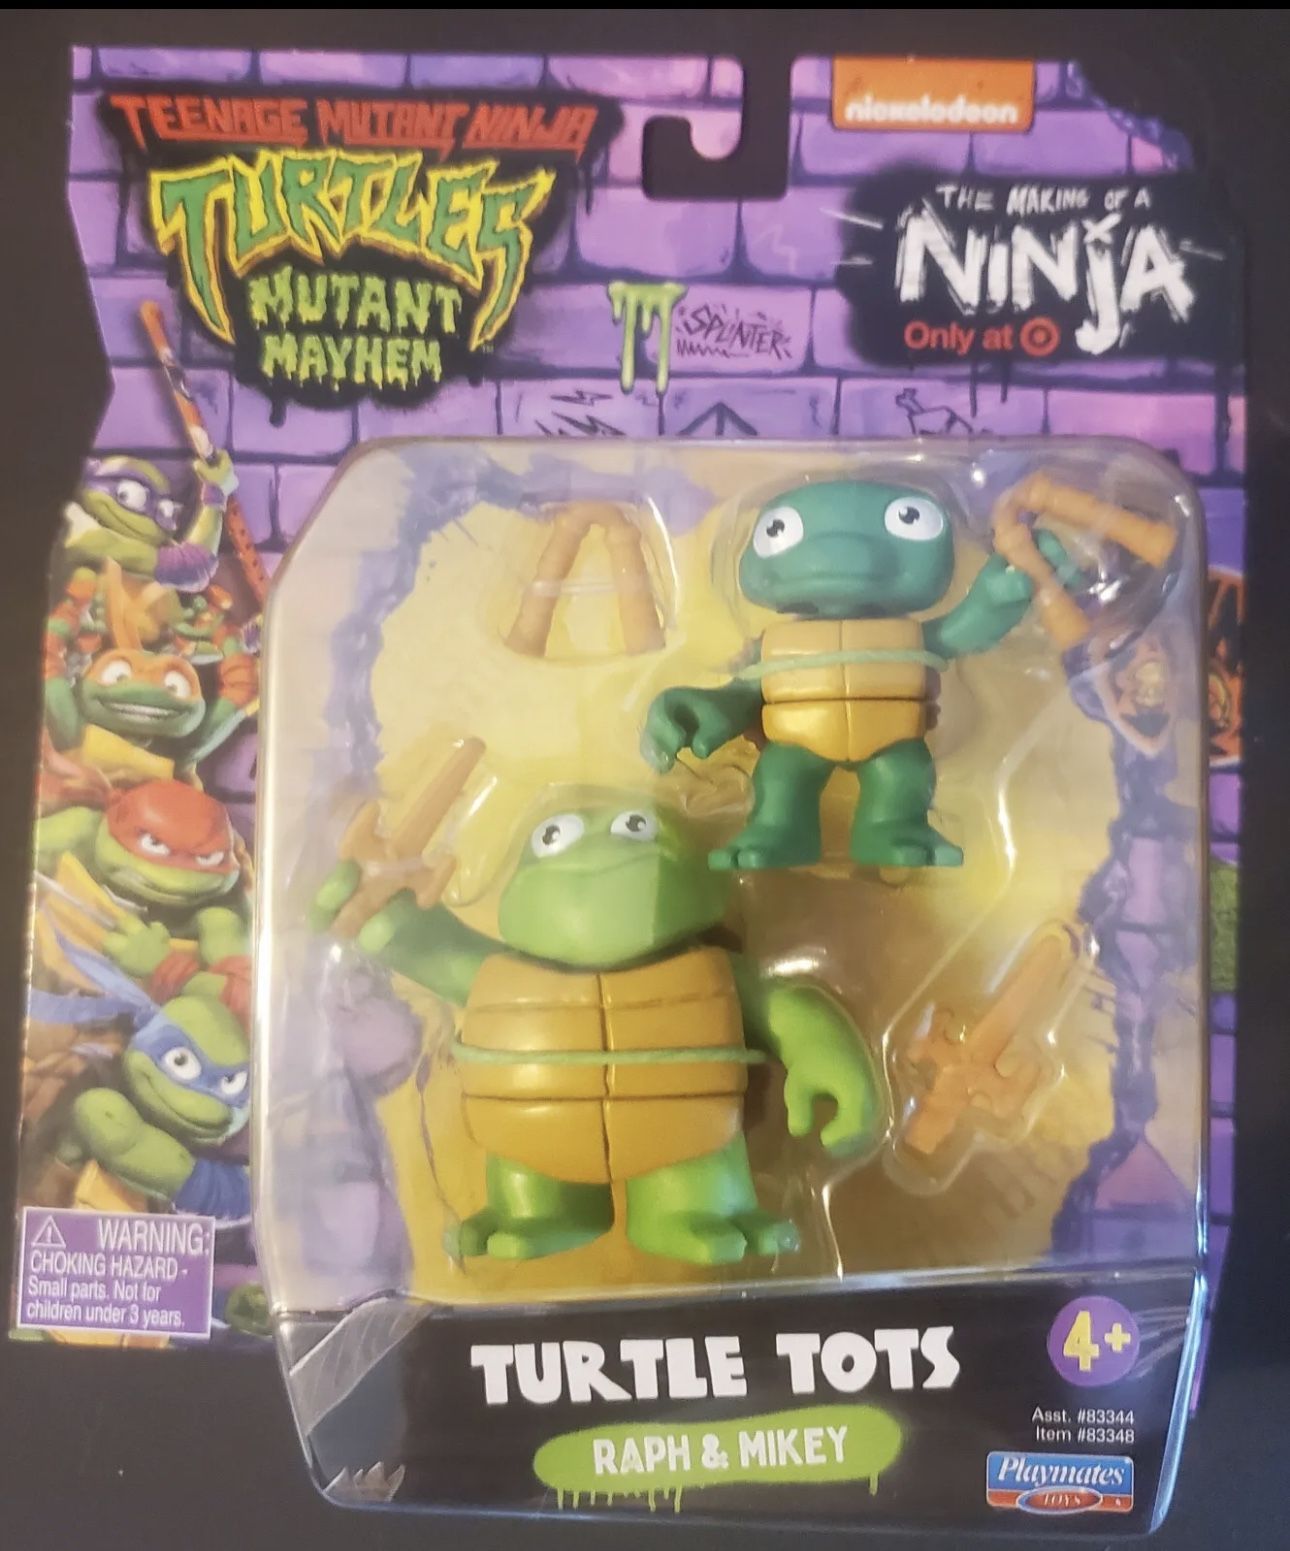 Teenage Mutant Ninja Turtles Mutant Mayhem The Making of a Ninja Raph &  Mikey Exclusive Action Figure [Turtle Tots]